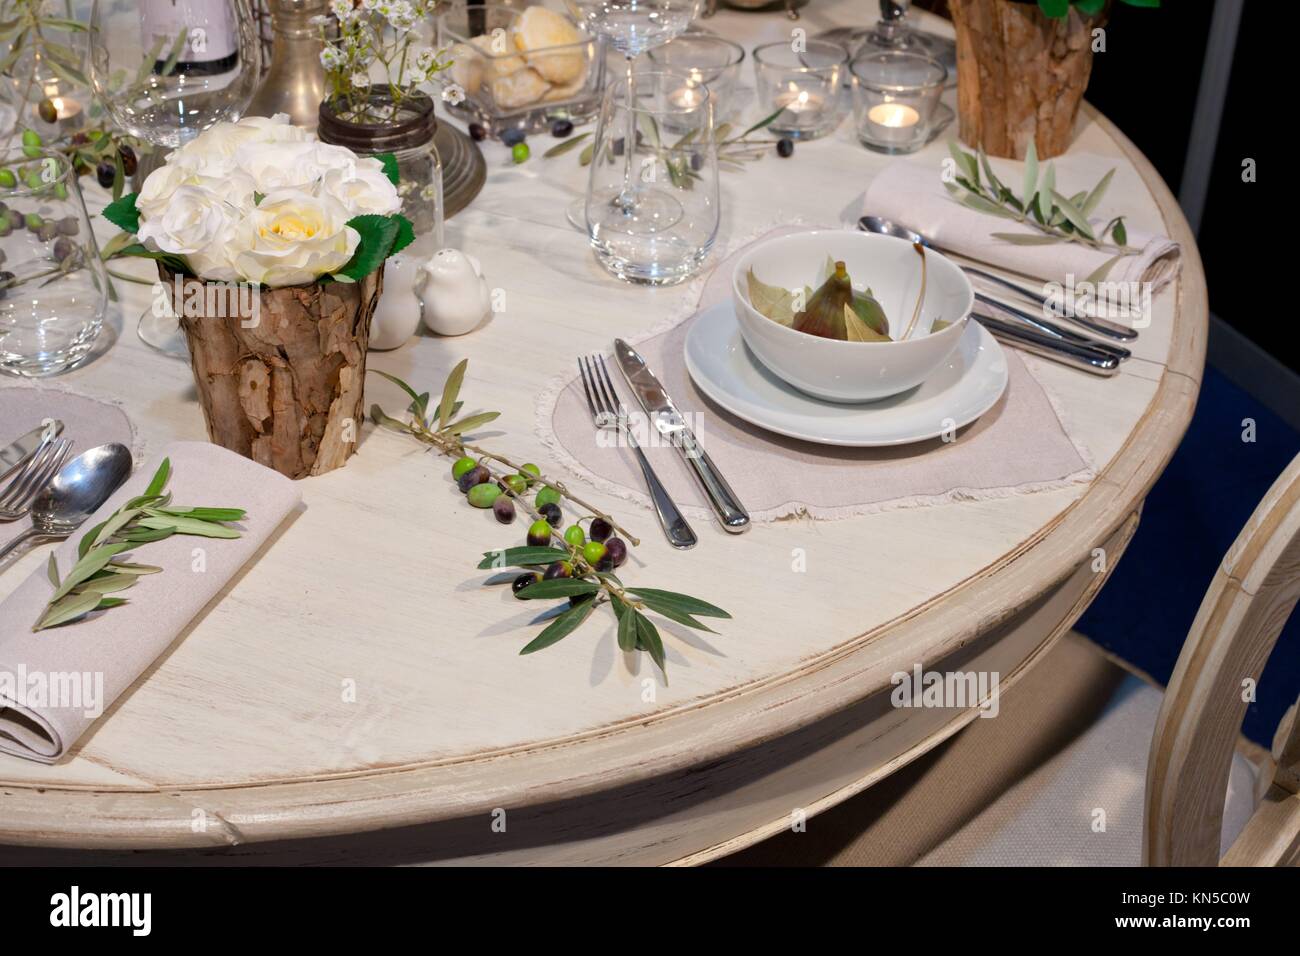 Décoration de table de mariage avec tronc en bois vases, figues, olives et direction générale. Banque D'Images